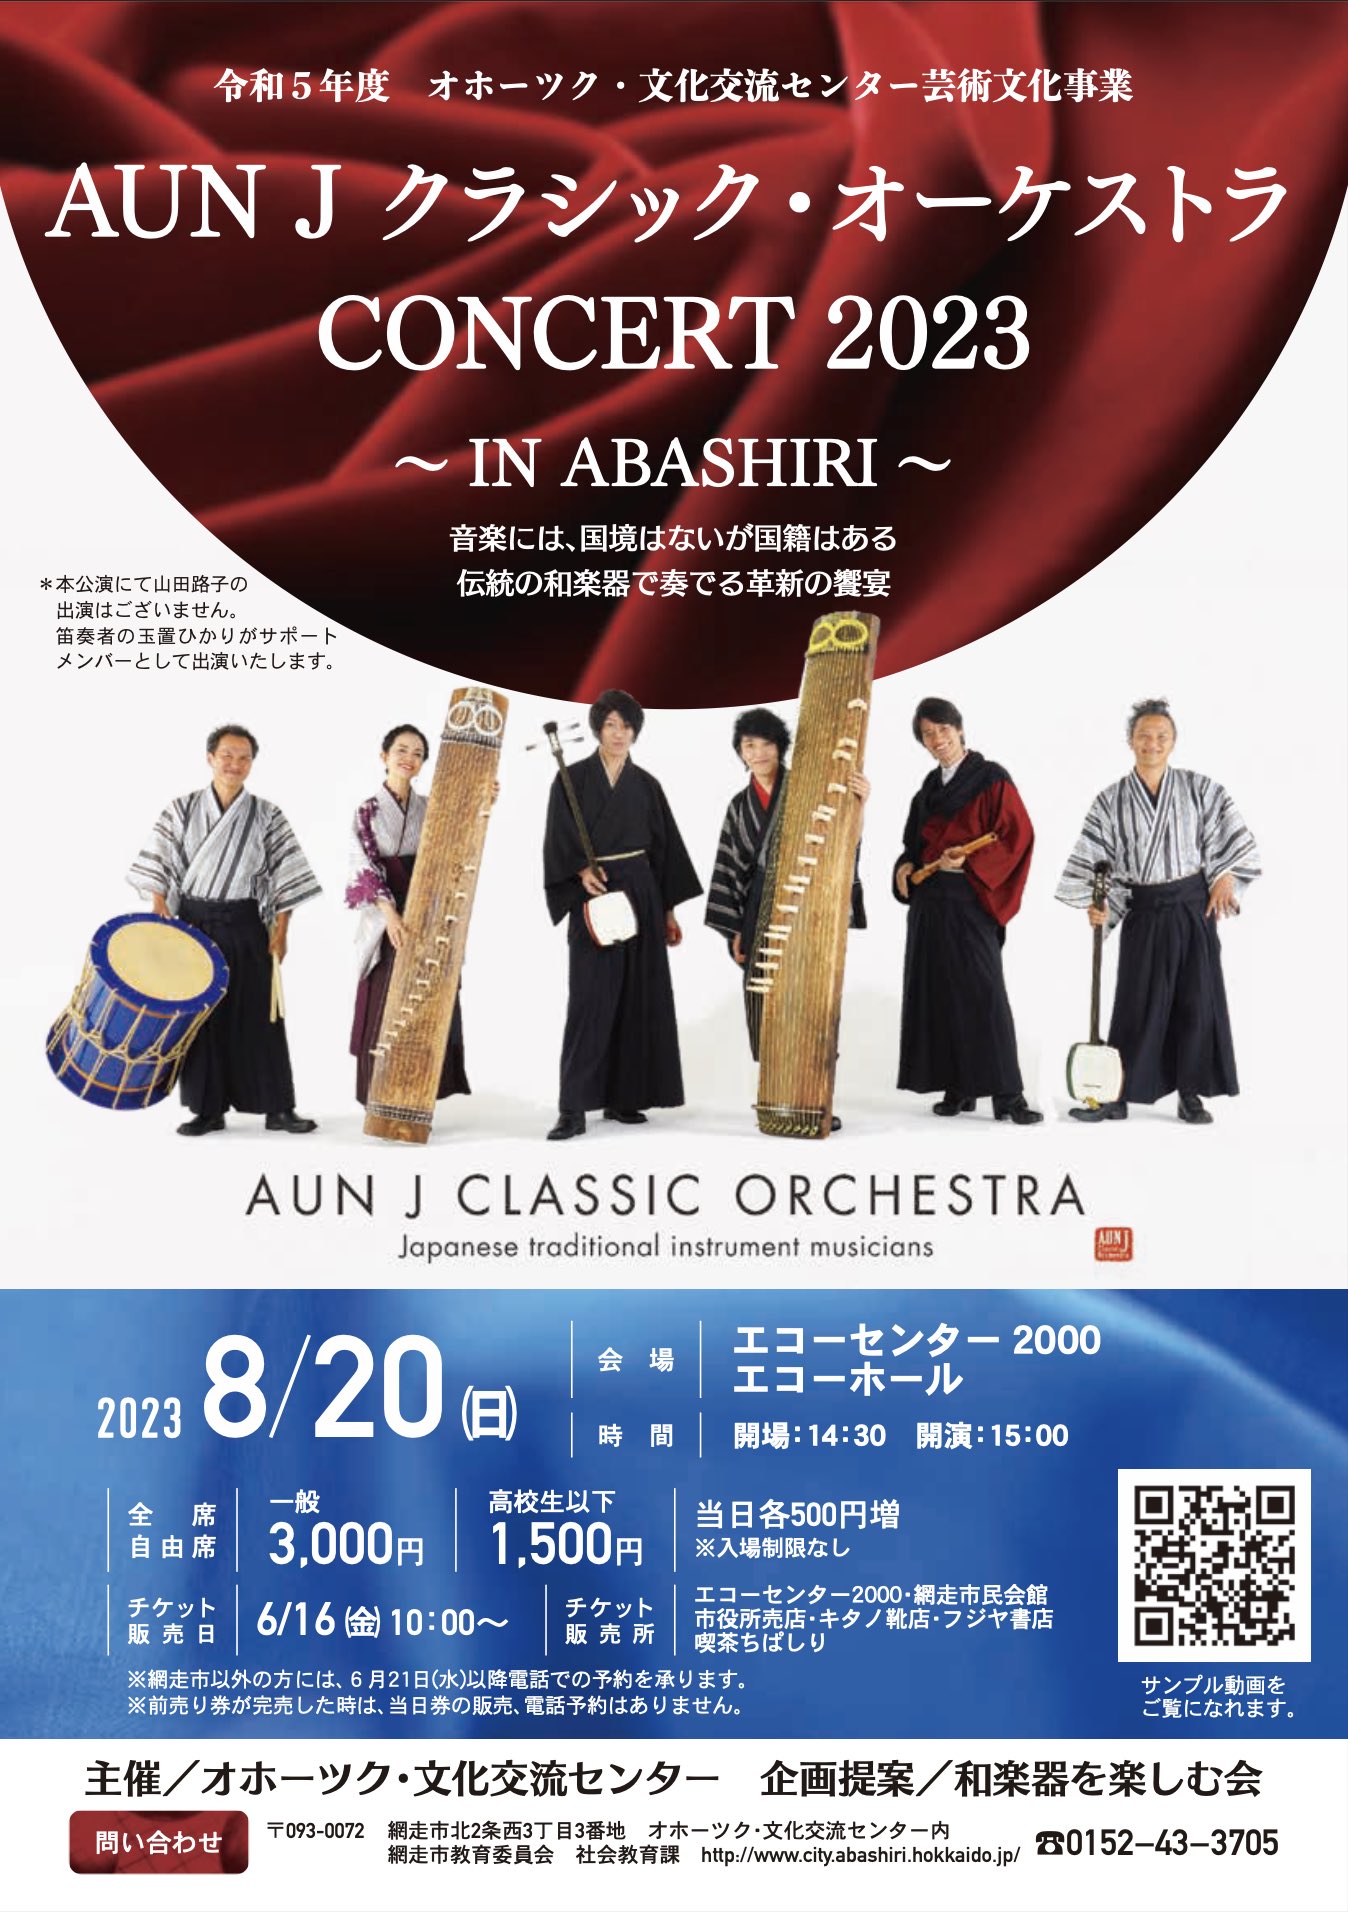 【網走】AUN J クラシック・オーケストラ CONCERT 2023